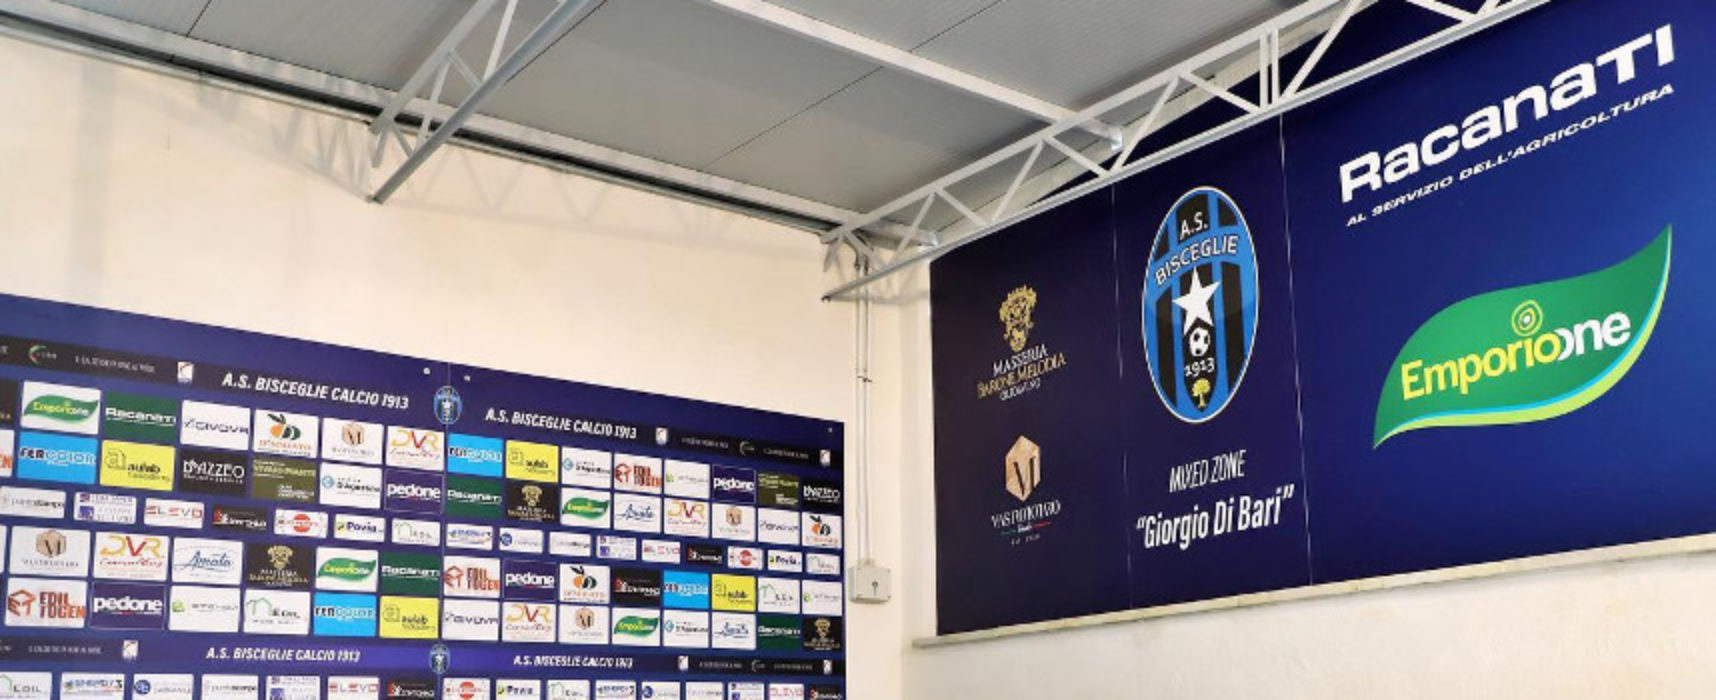 Bisceglie Calcio, inaugurata la mixed zone “Giorgio Di Bari”